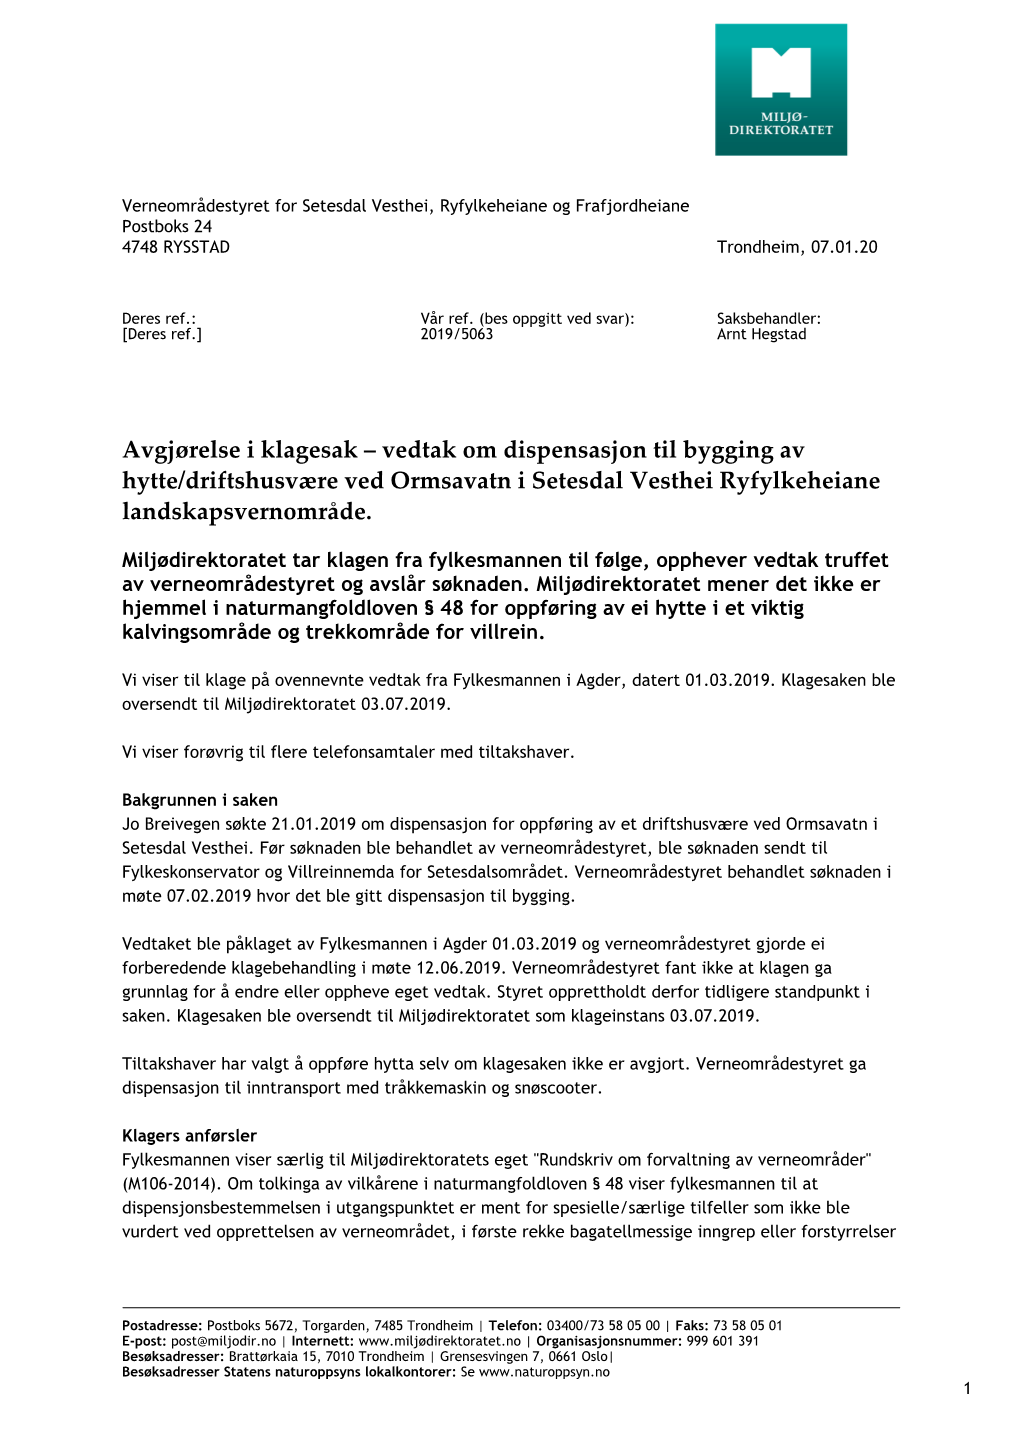 Vedtak Om Dispensasjon Til Bygging Av Hytte/Driftshusvære Ved Ormsavatn I Setesdal Vesthei Ryfylkeheiane Landskapsvernområde